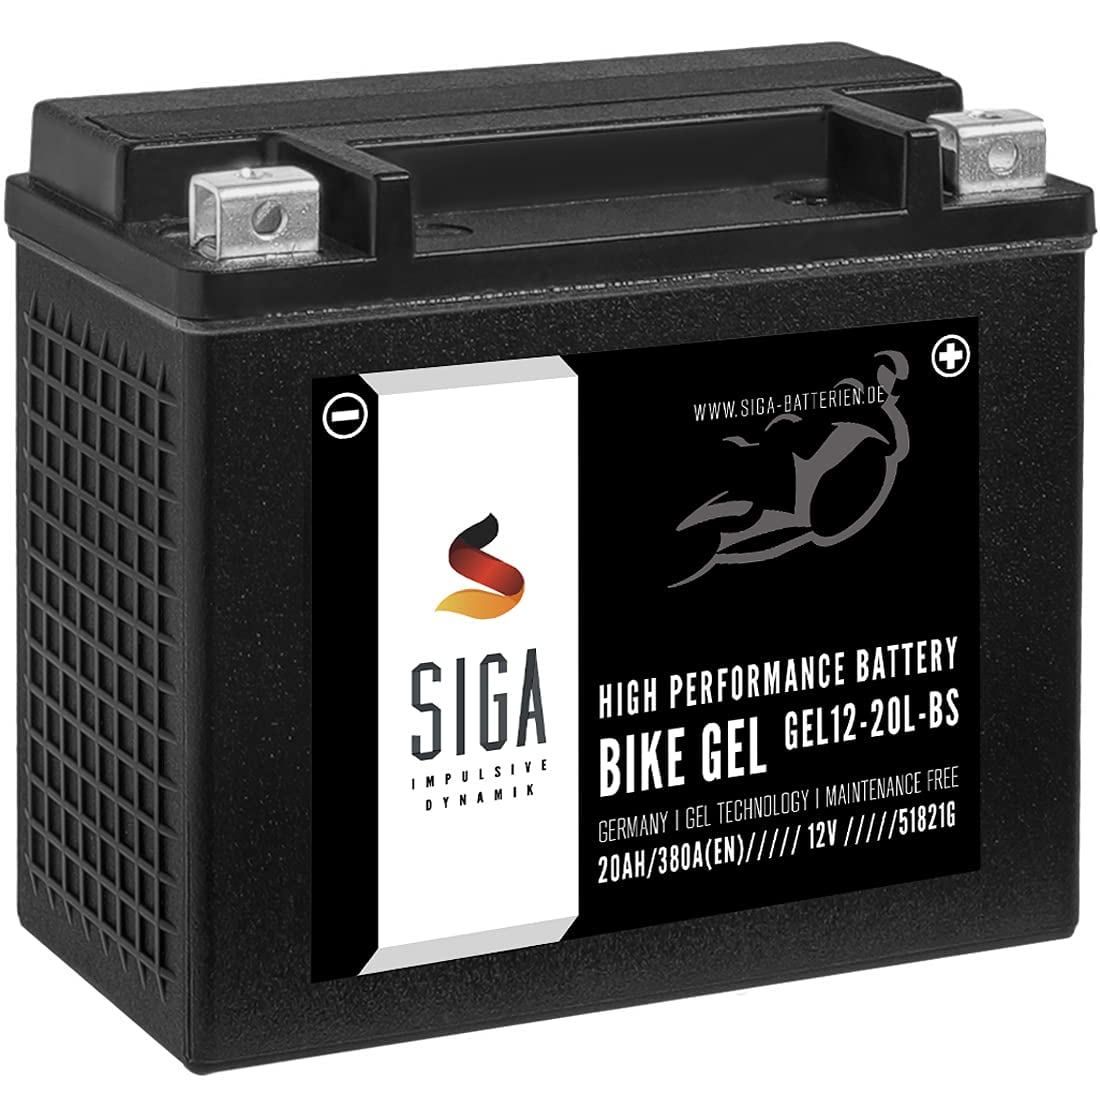 SIGA GEL Motorradbatterie 12V 20Ah 380A/EN GEL Batterie YTX20L-BS GEL12-20L-BS YTX20L-4 HVT-01 von SIGA IMPULSIVE DYNAMIK